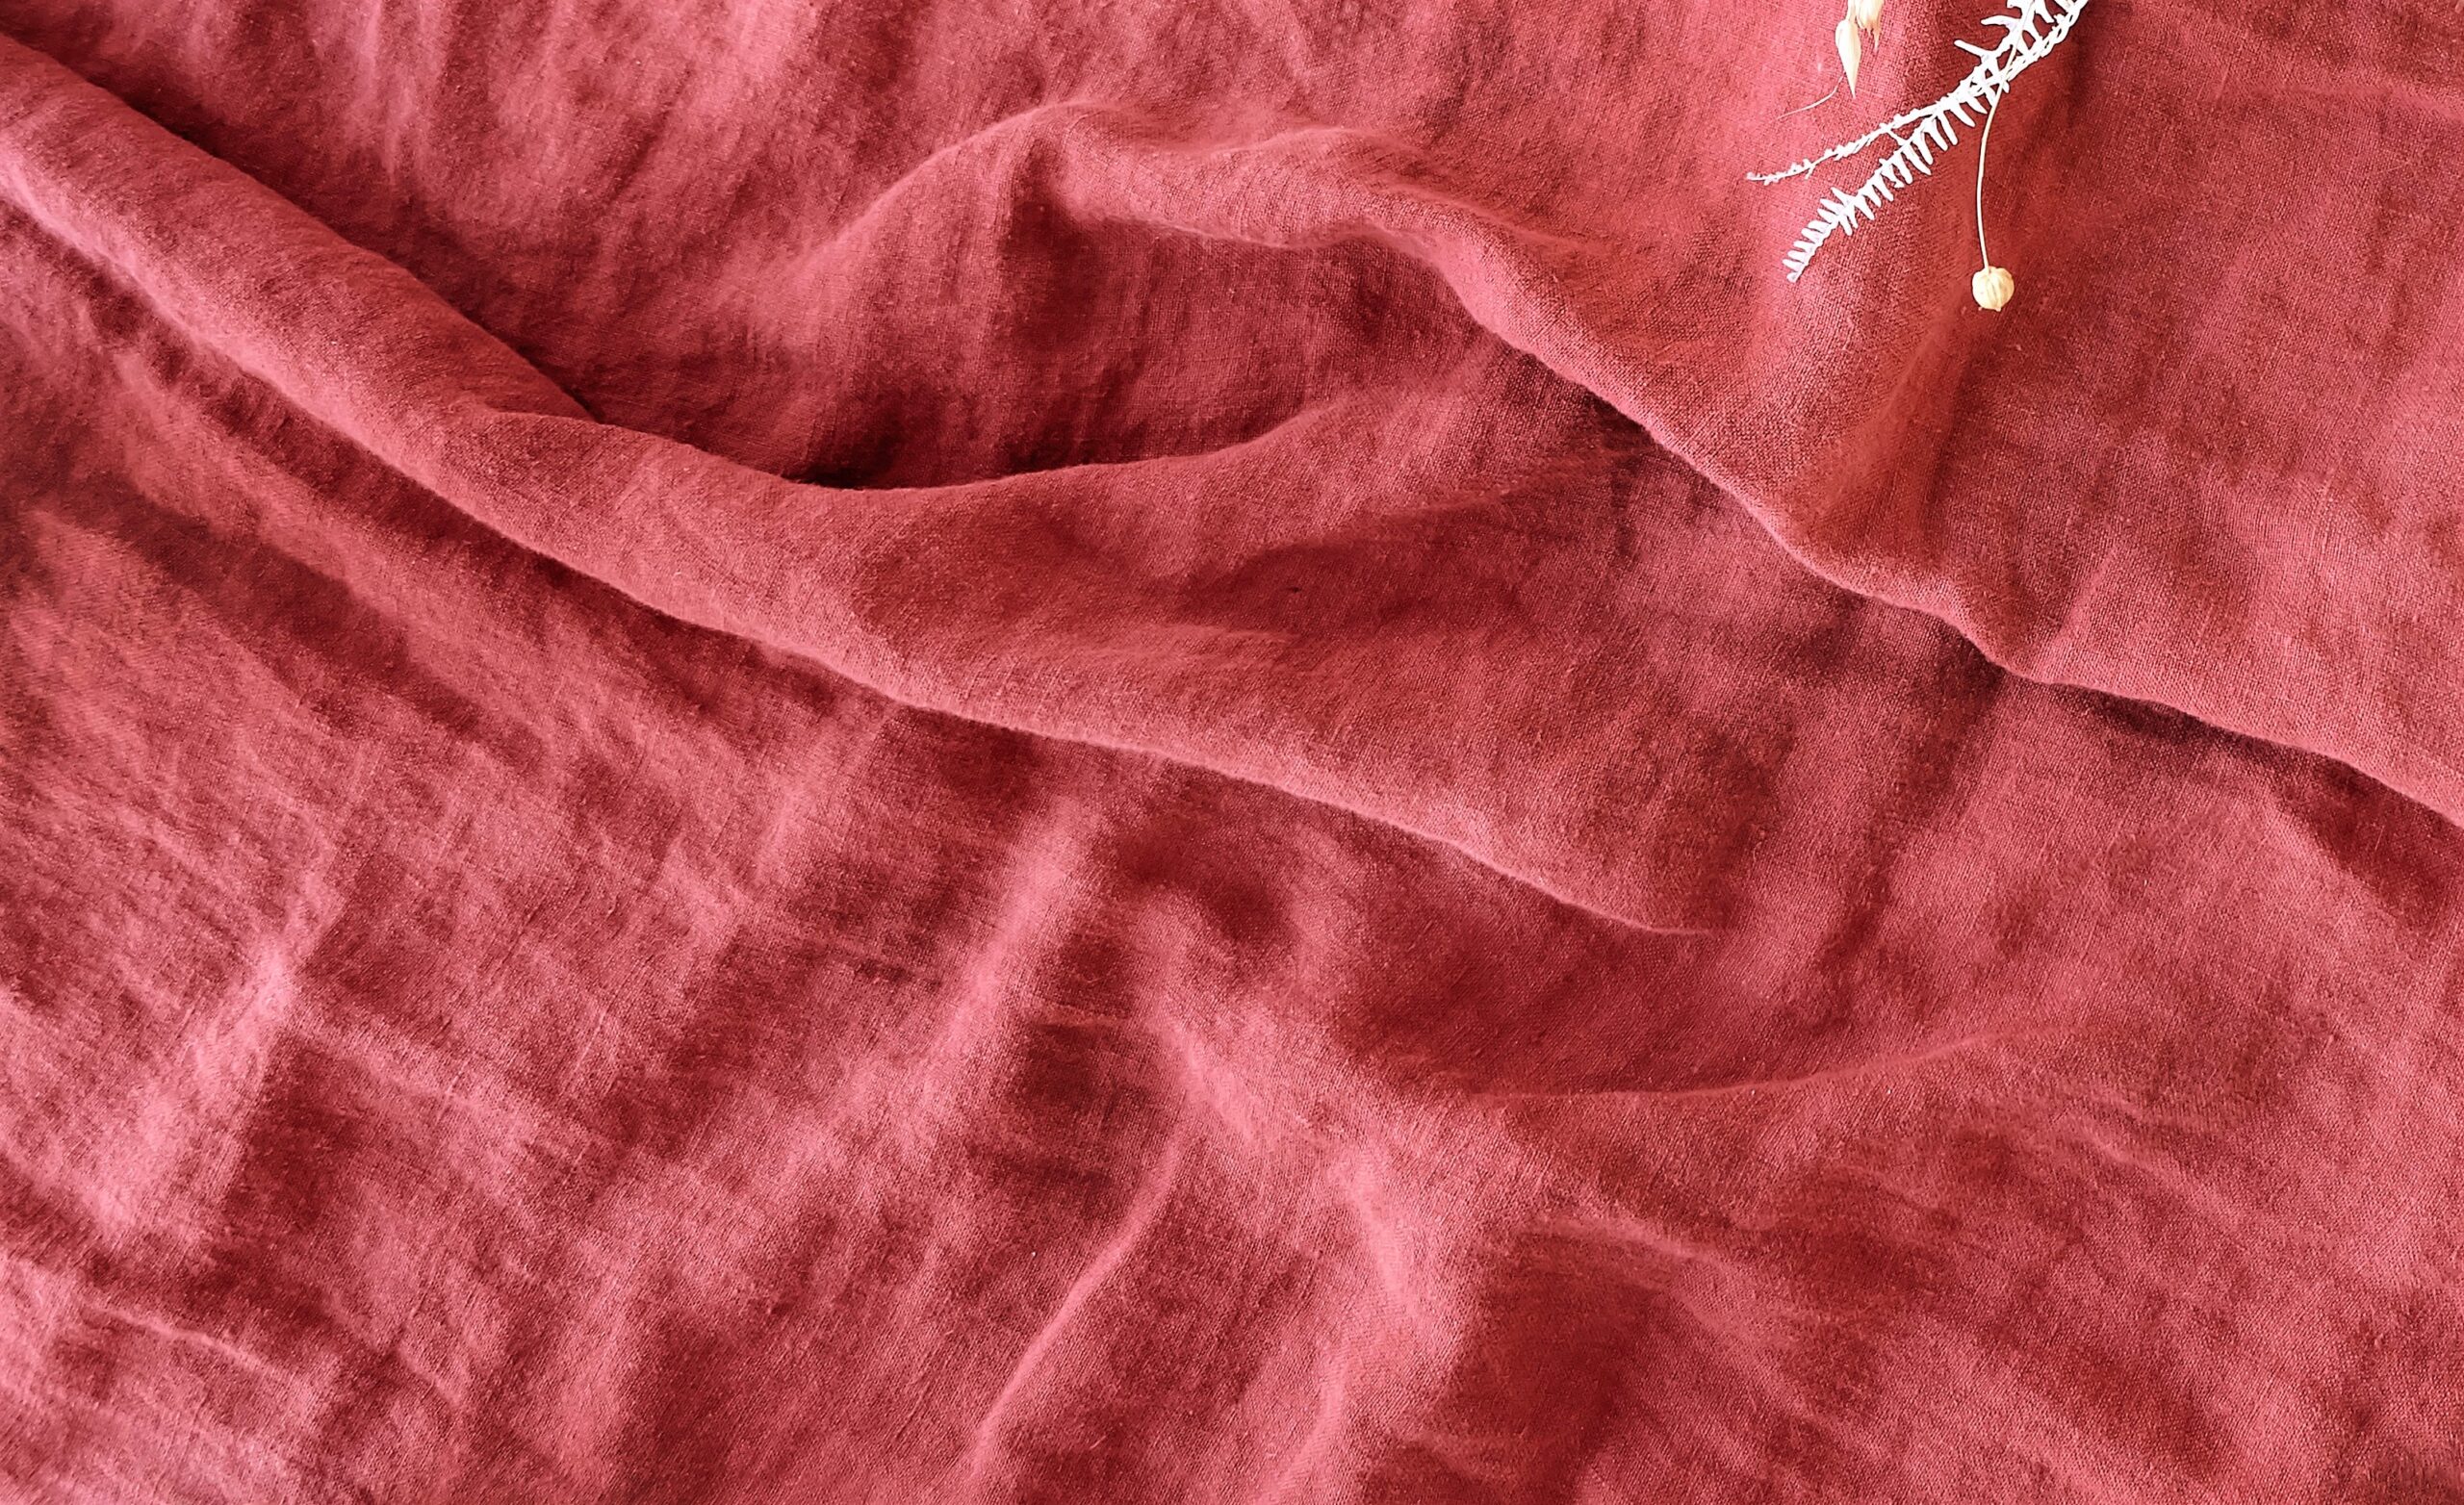 Fushia fiber of a linen towel.